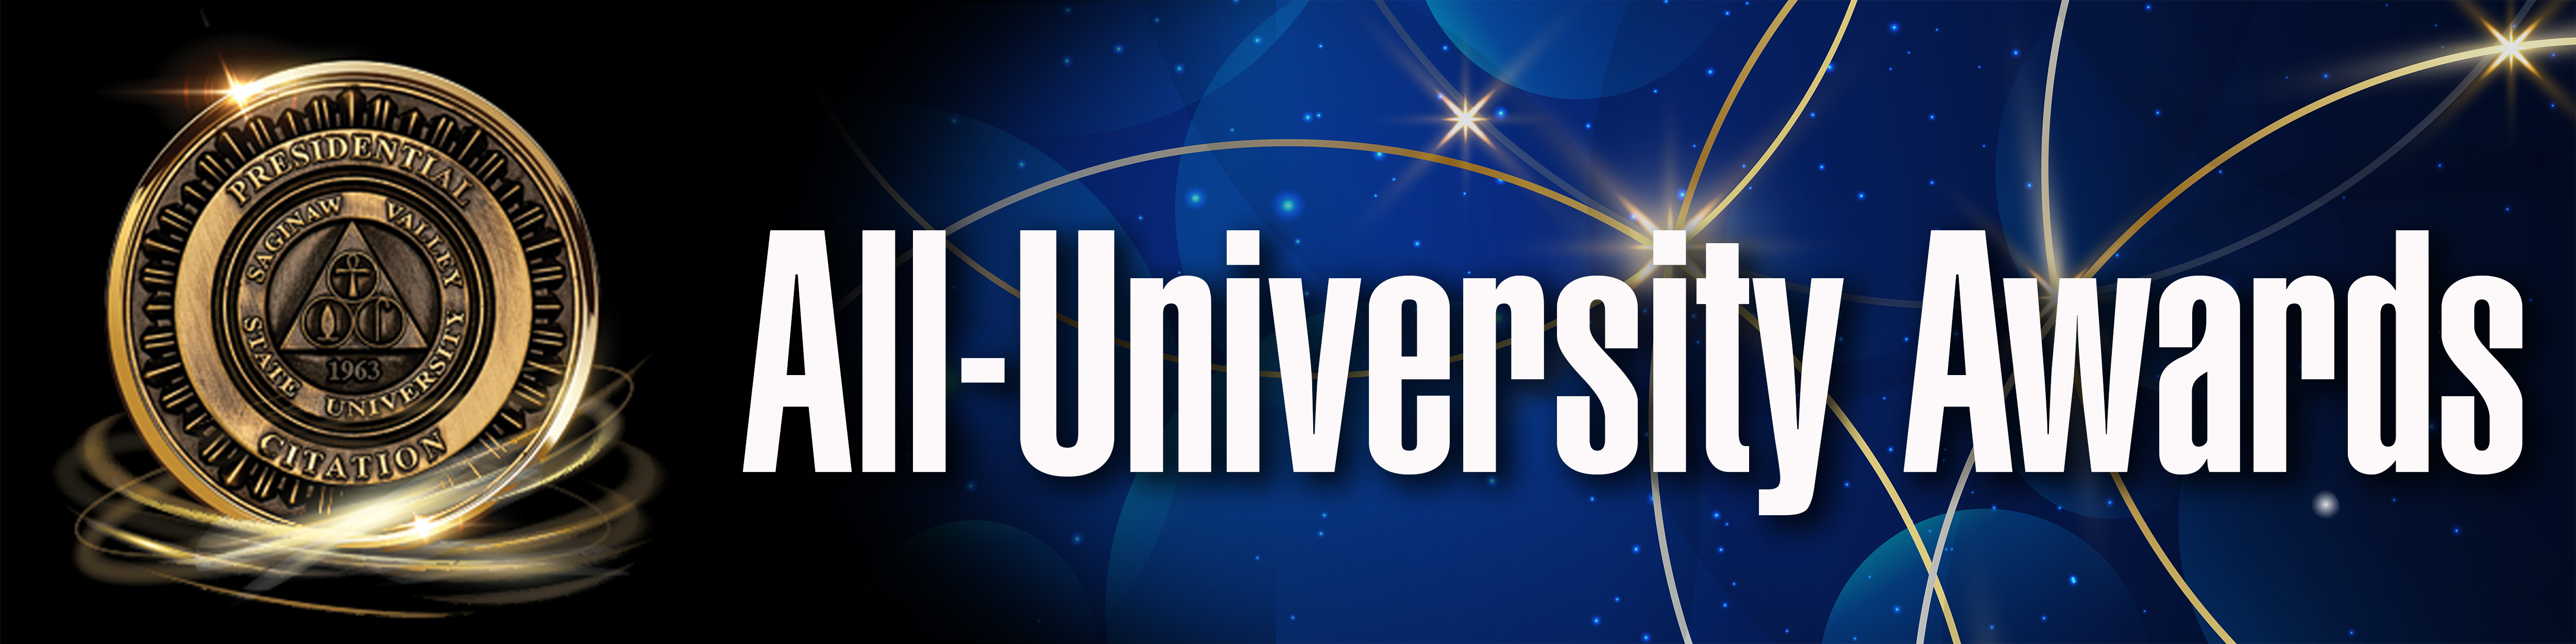 All university Awards banner